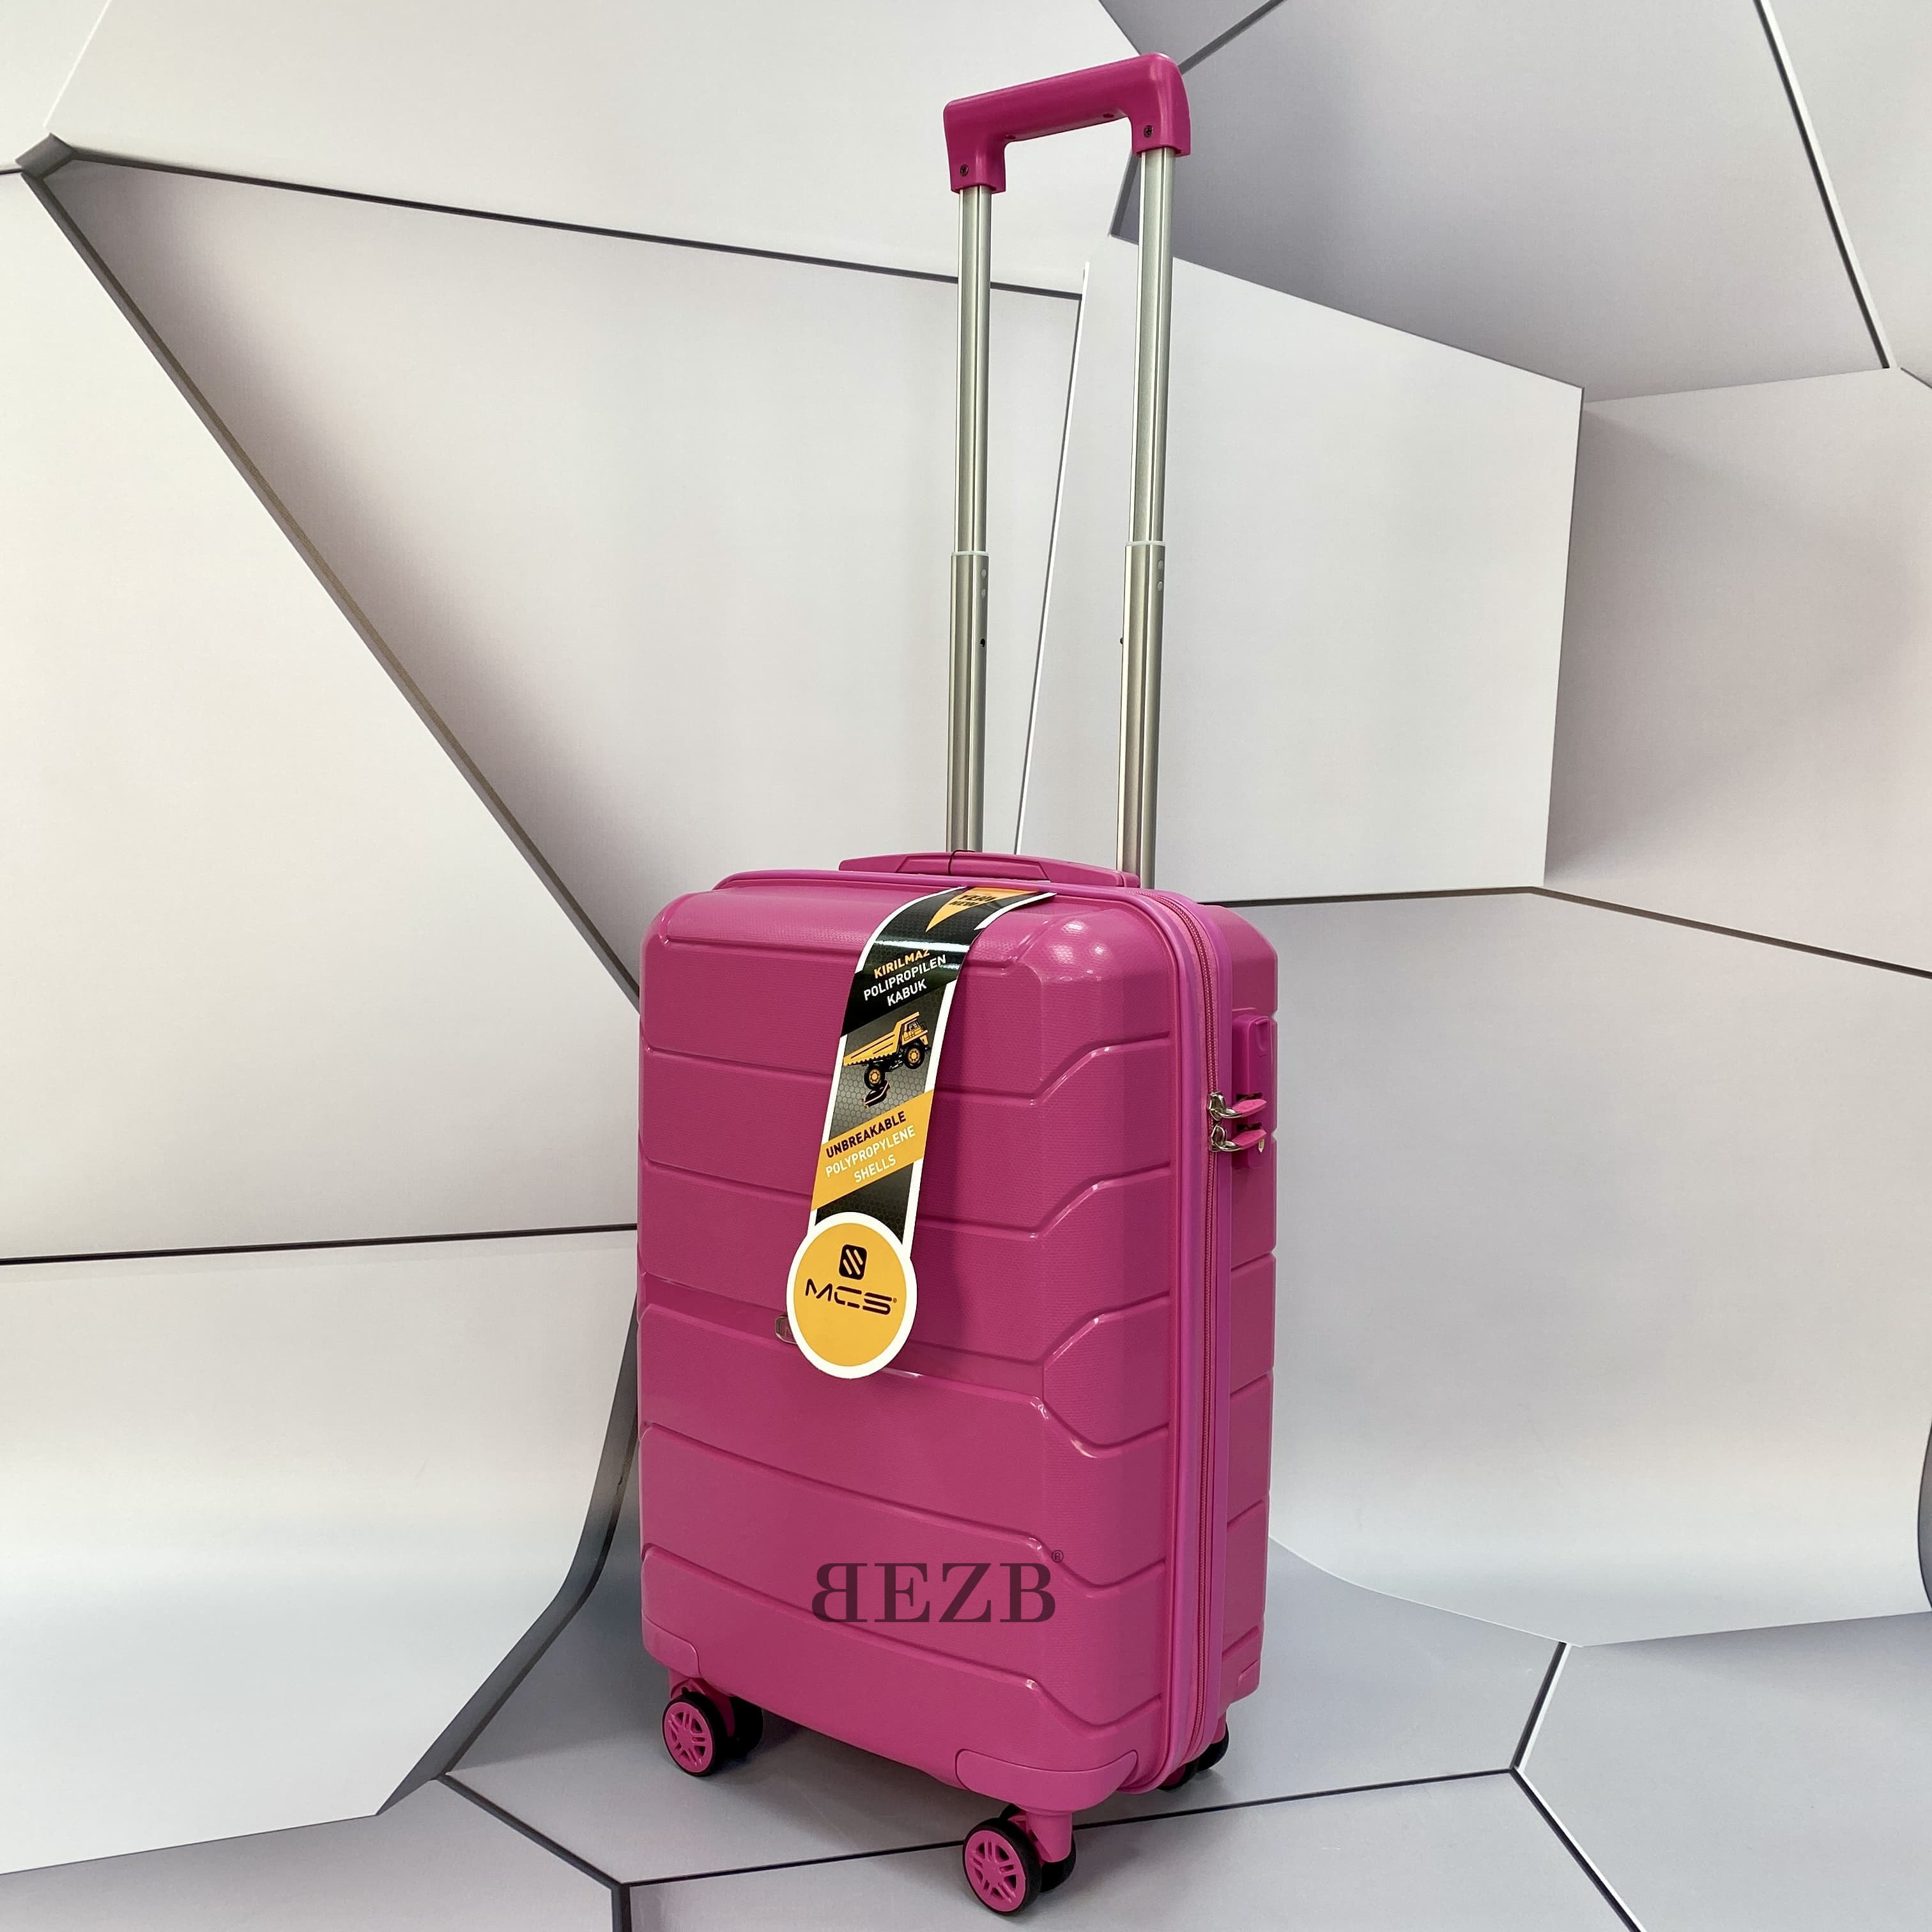 Маленький чемодан для ручьной клади из полипропилена MCS V366 S FUNCSIA! Для 8-10 кг! - 6